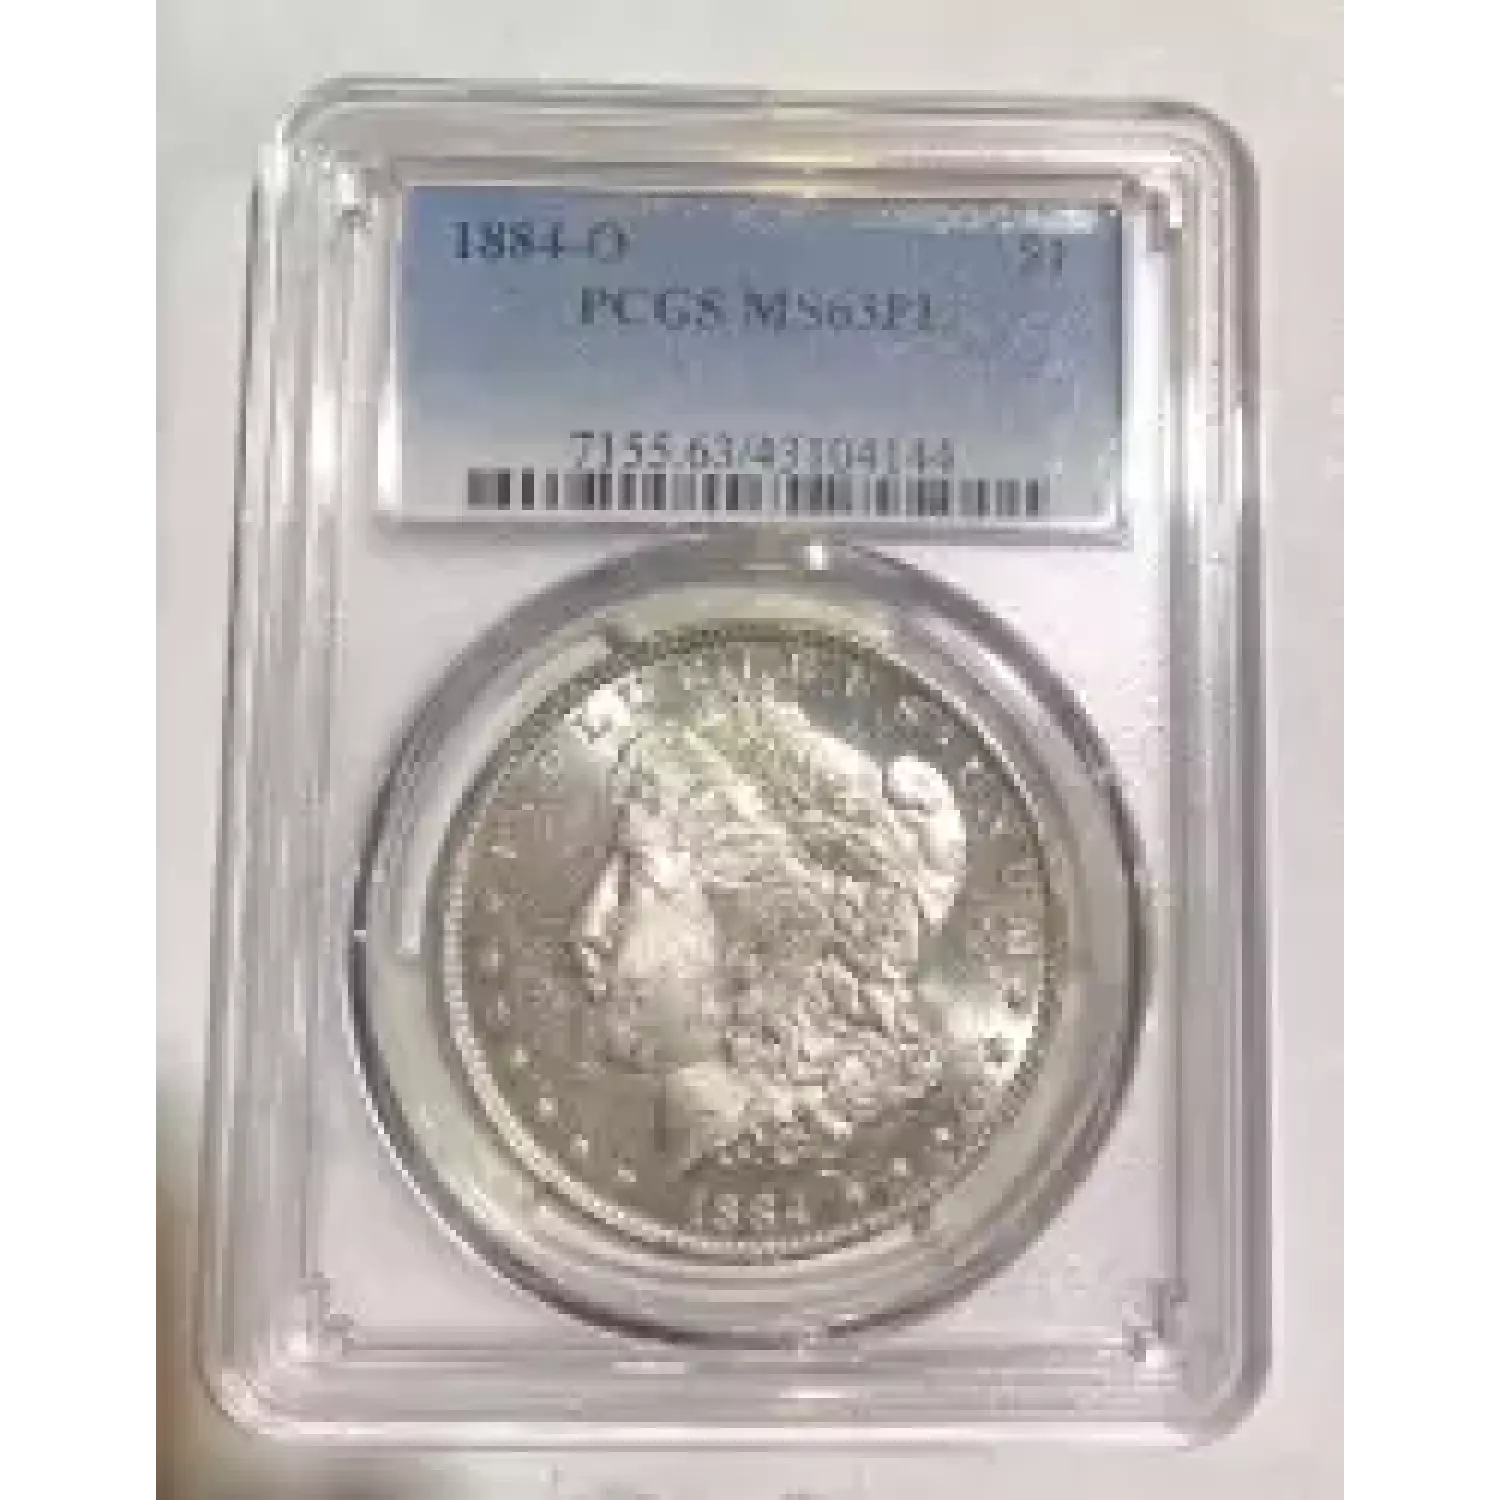 1884-O $1, PL